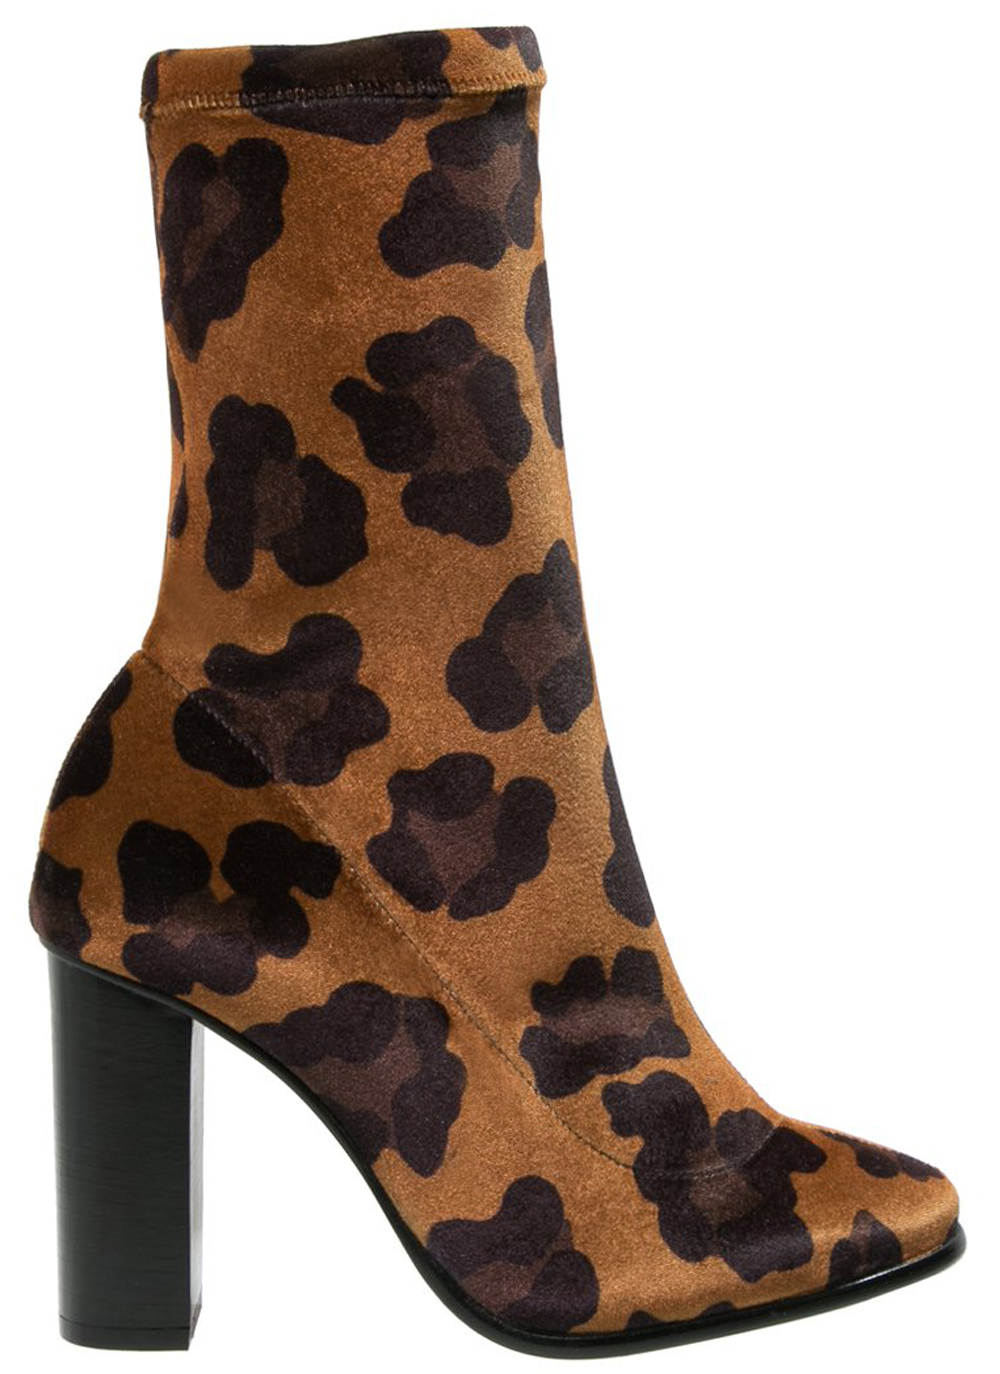 boots-leopard-topshop-1